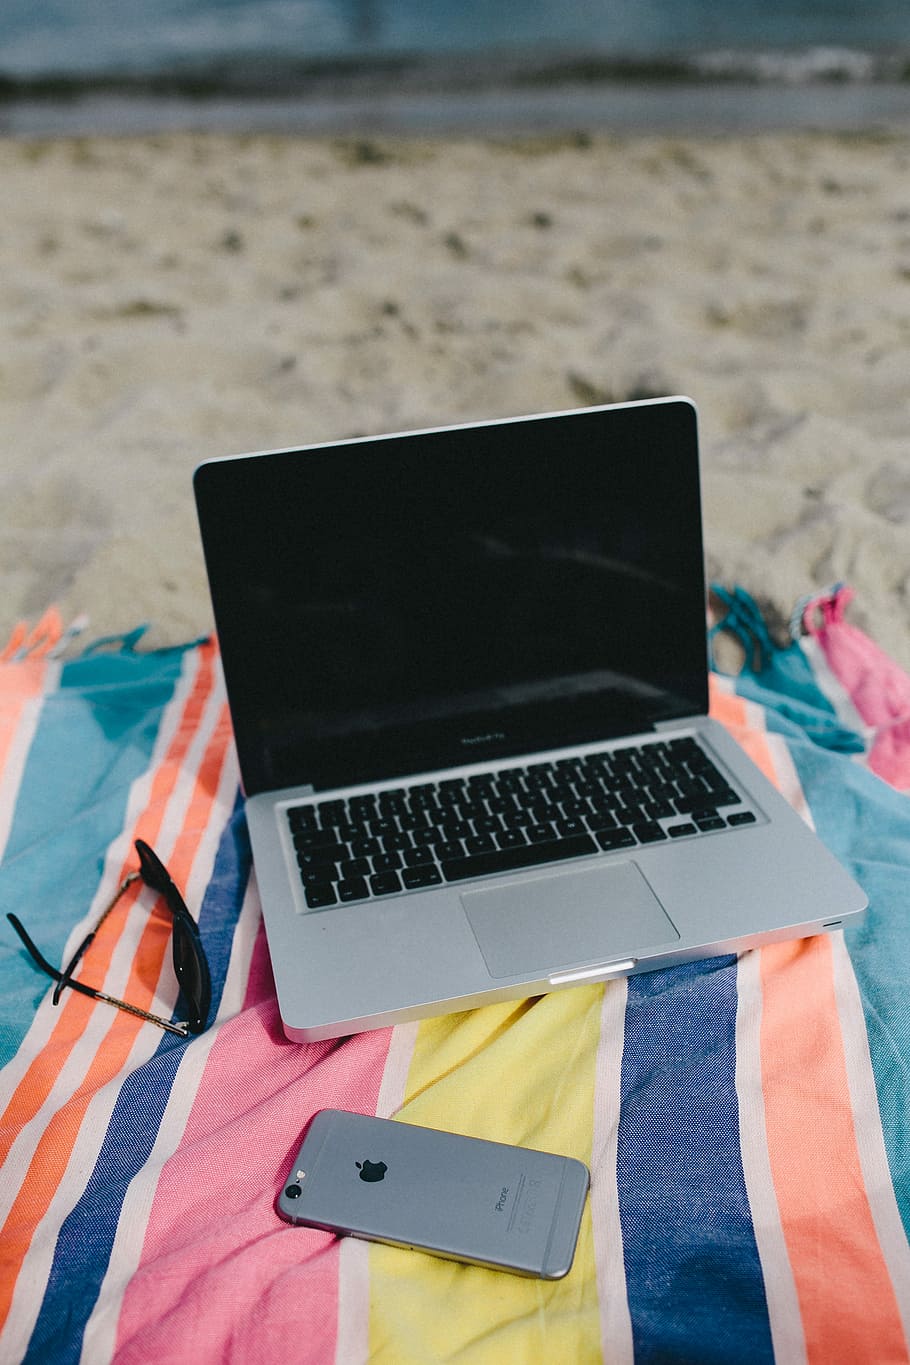 вместе, пляж, песок, лето, компьютер, Macbook, портативный компьютер, одеяло, каникулы, море